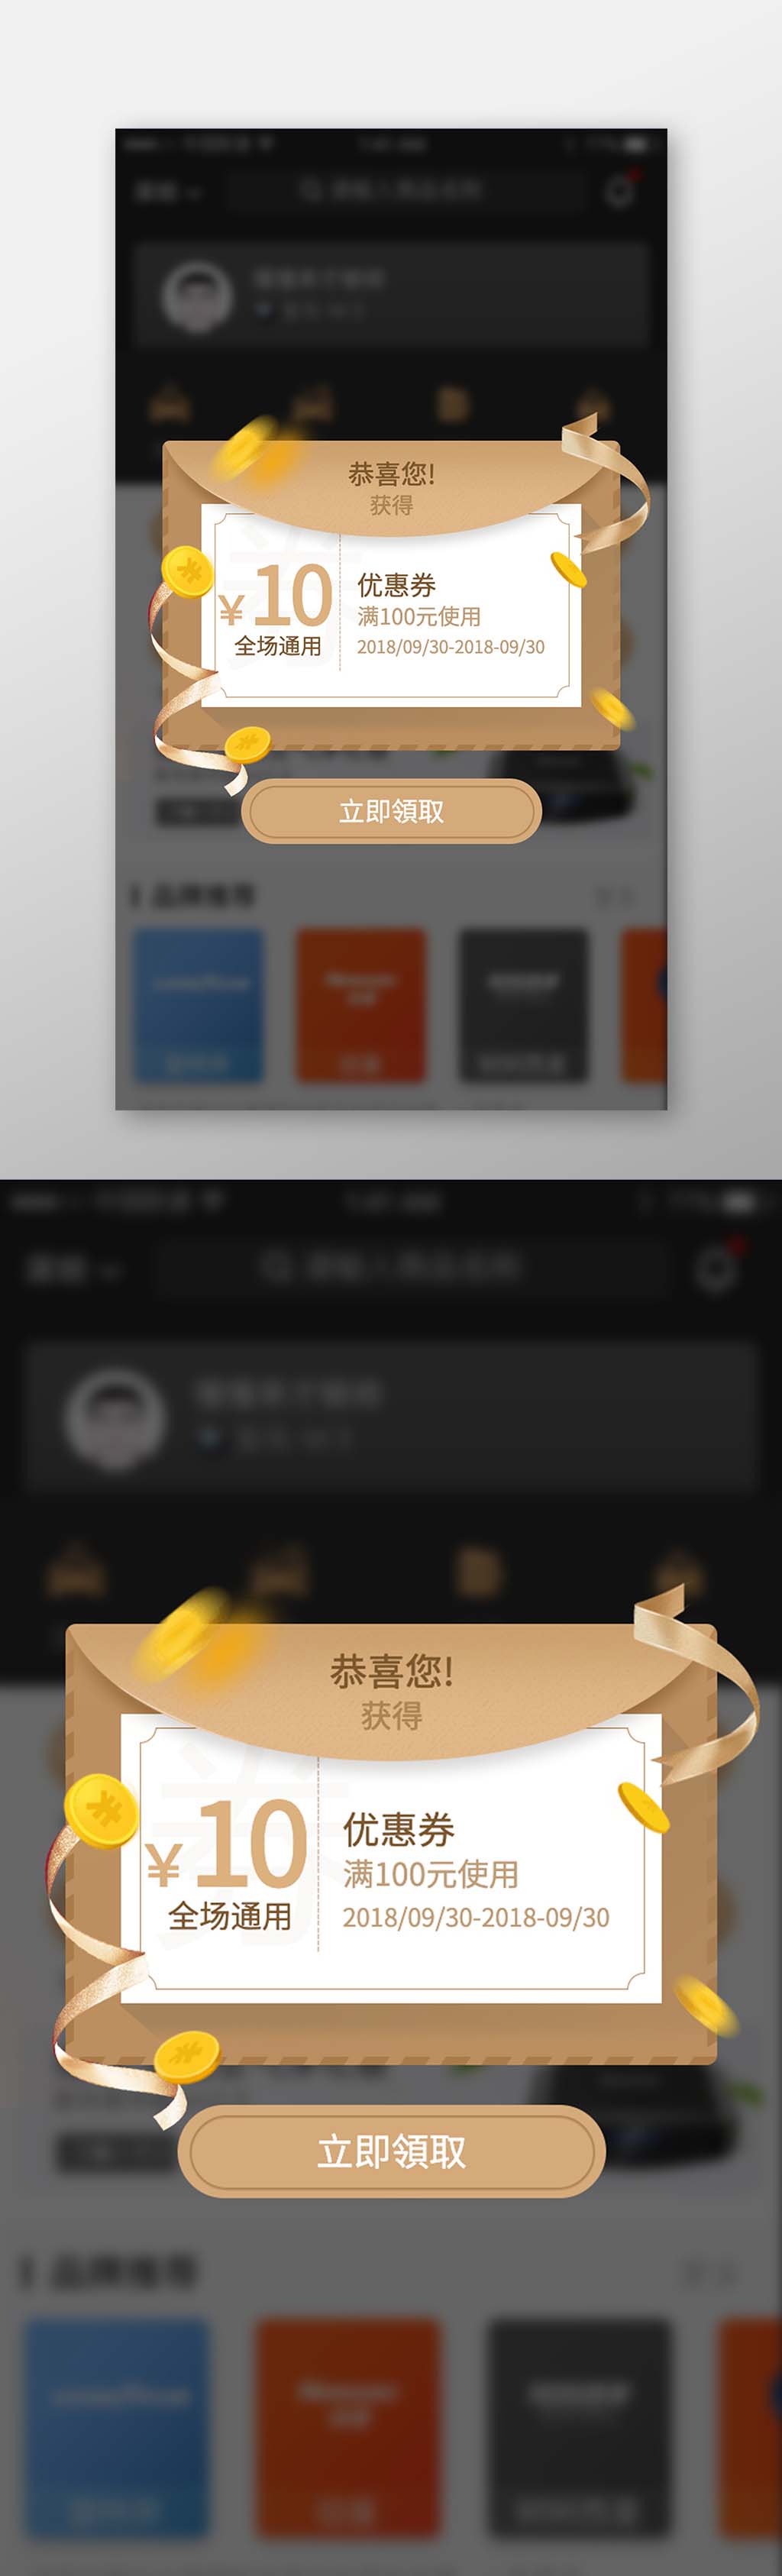 金色简约app优惠领取弹窗广告弹框